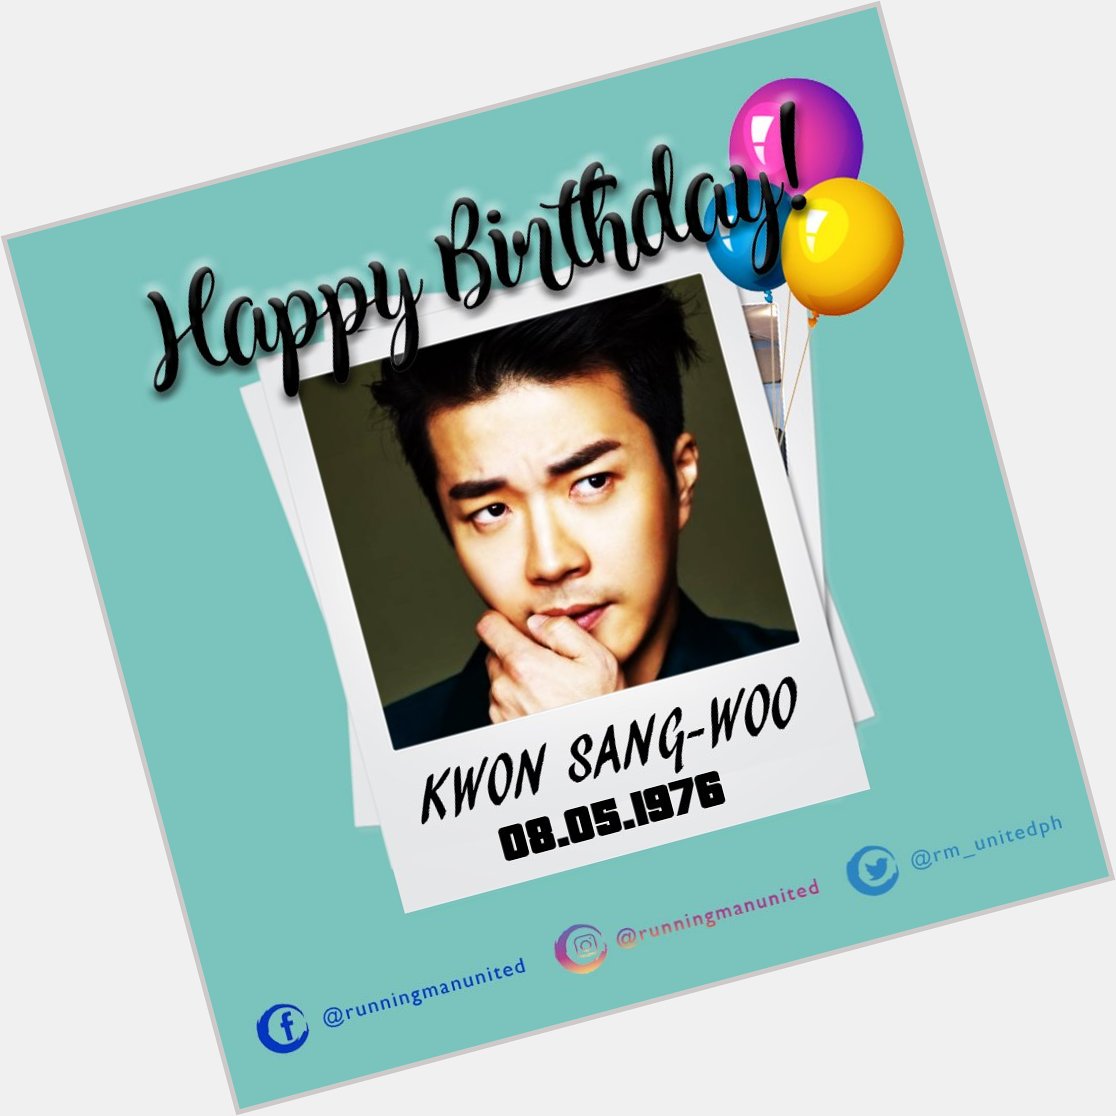 Happy Birthday Kwon Sang-woo! 